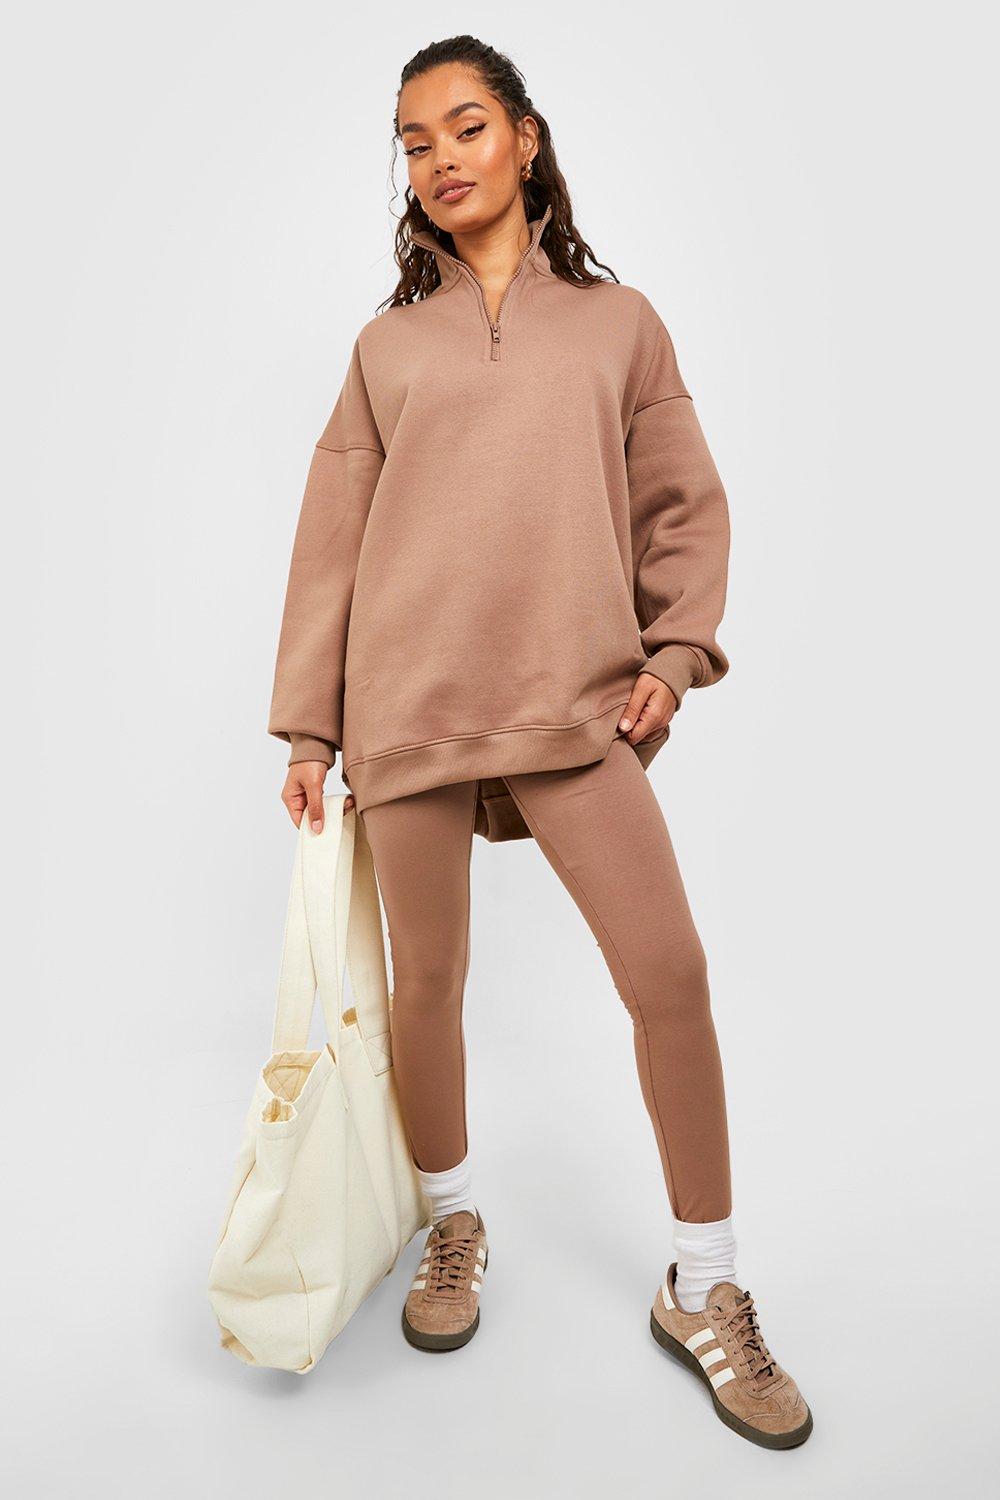 Women's Half Zip Sweatshirt And Legging Set